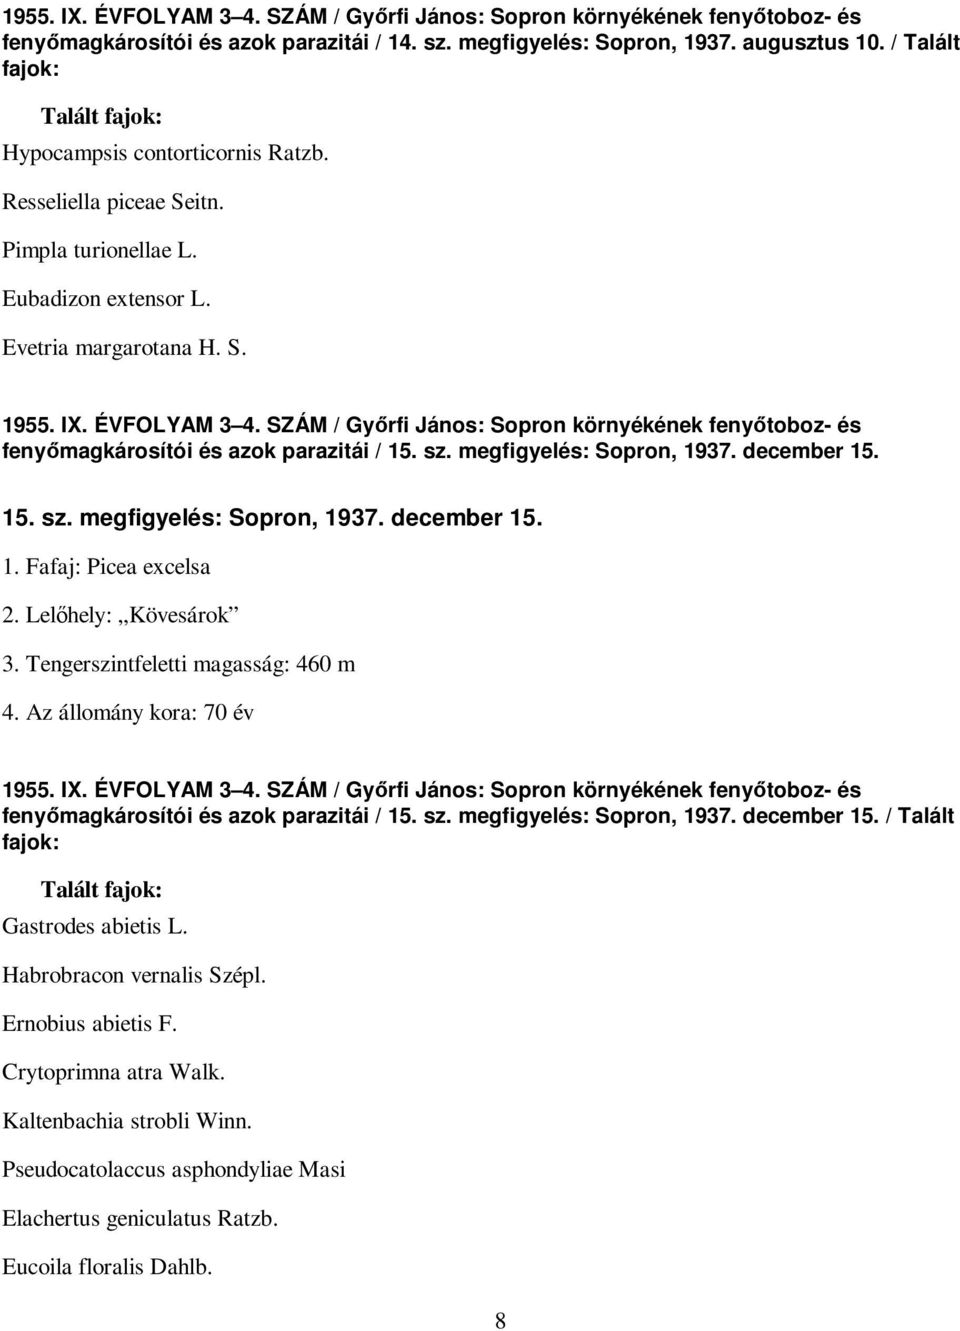 SZÁM / Gyırfi János: Sopron környékének fenyıtoboz- és fenyımagkárosítói és azok parazitái / 15. sz. megfigyelés: Sopron, 1937. december 15. 15. sz. megfigyelés: Sopron, 1937. december 15. 1. Fafaj: Picea excelsa 2.